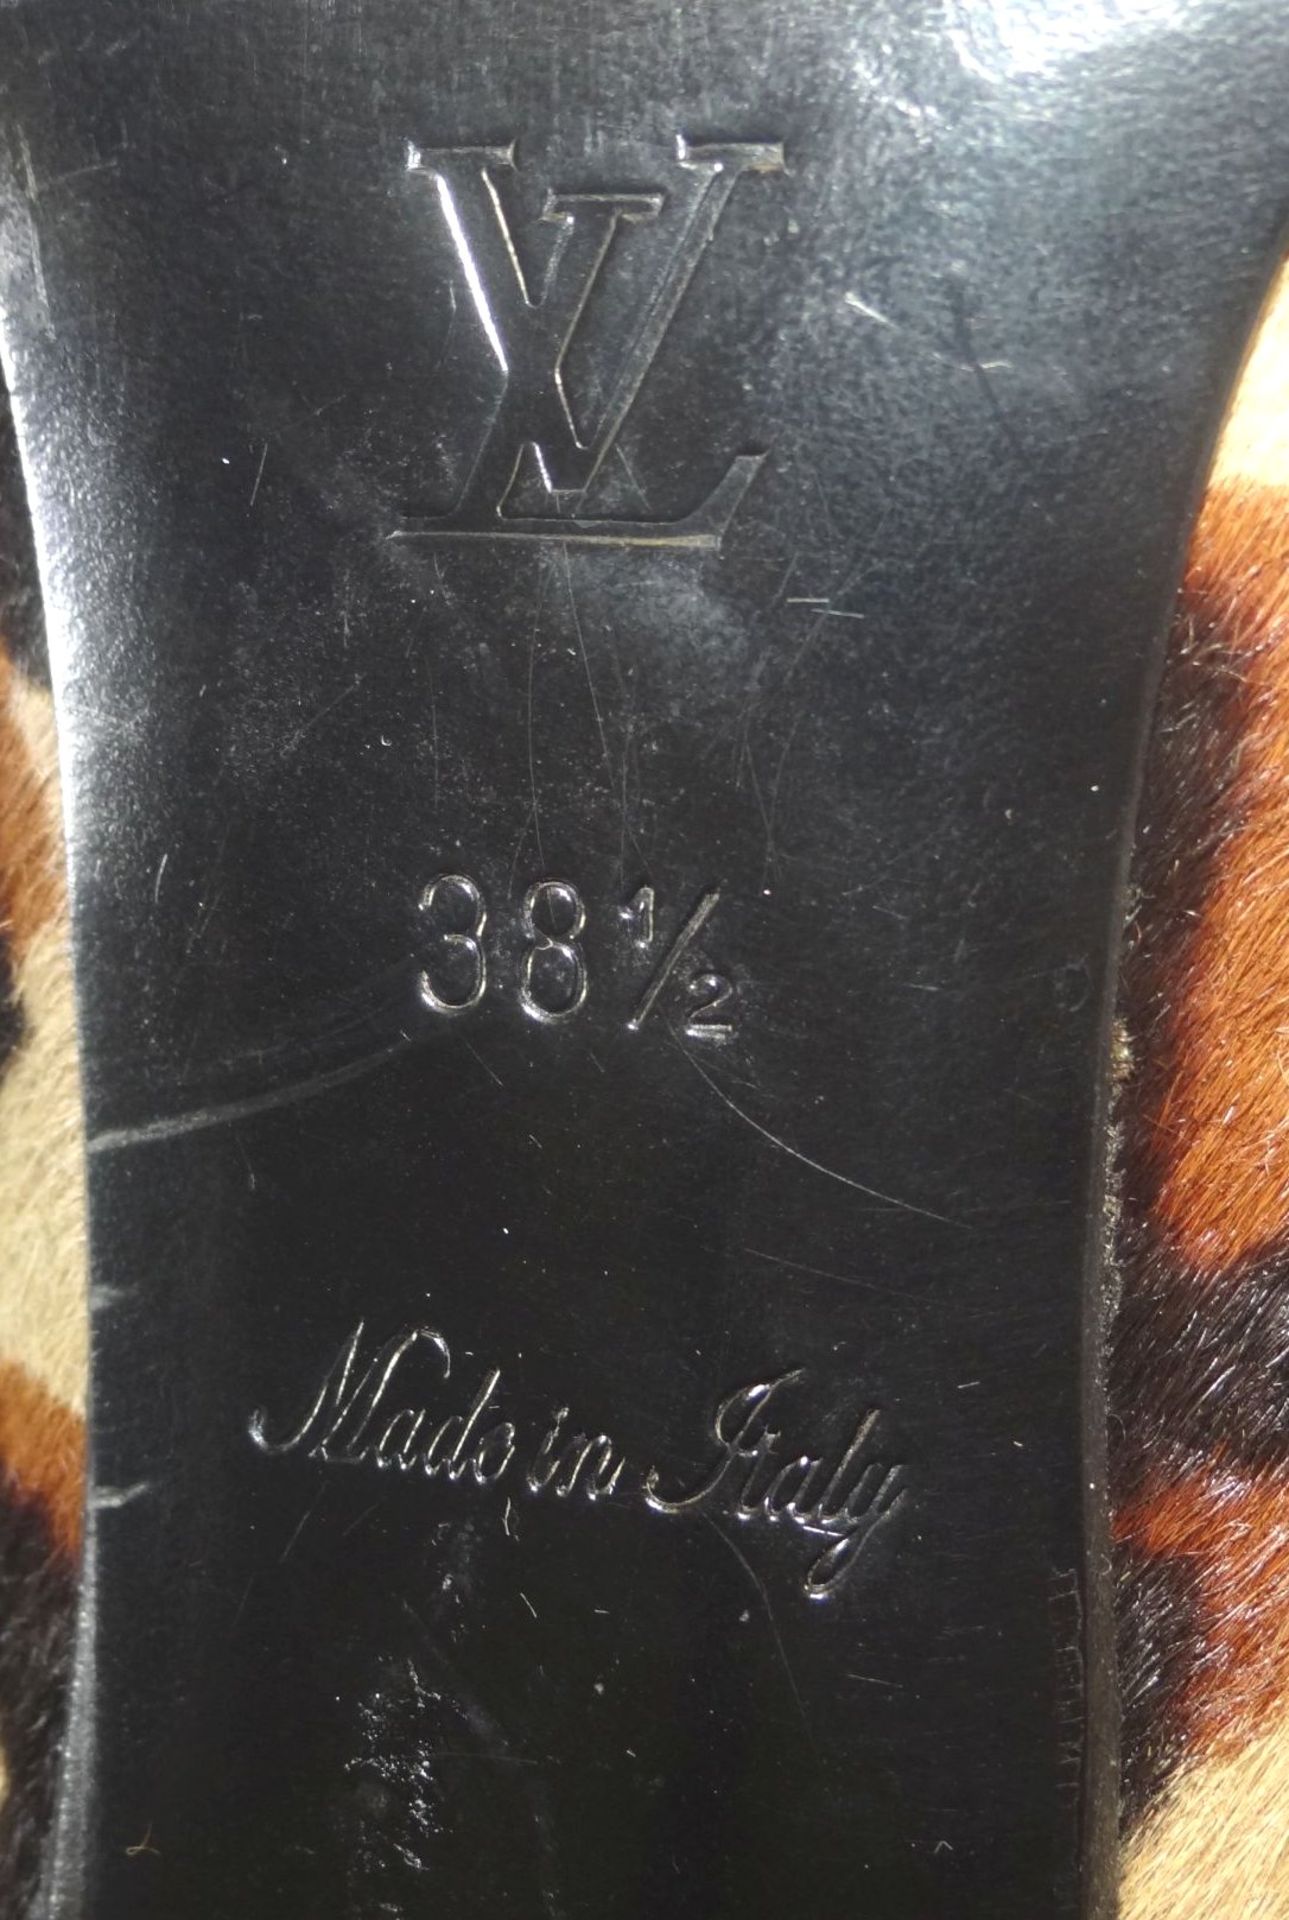 Paar Pumps "Louis Vuitton" in orig. Karton, 38 1/2, gut erhalten mit leichten Tragespuren, Kalb - Bild 9 aus 9